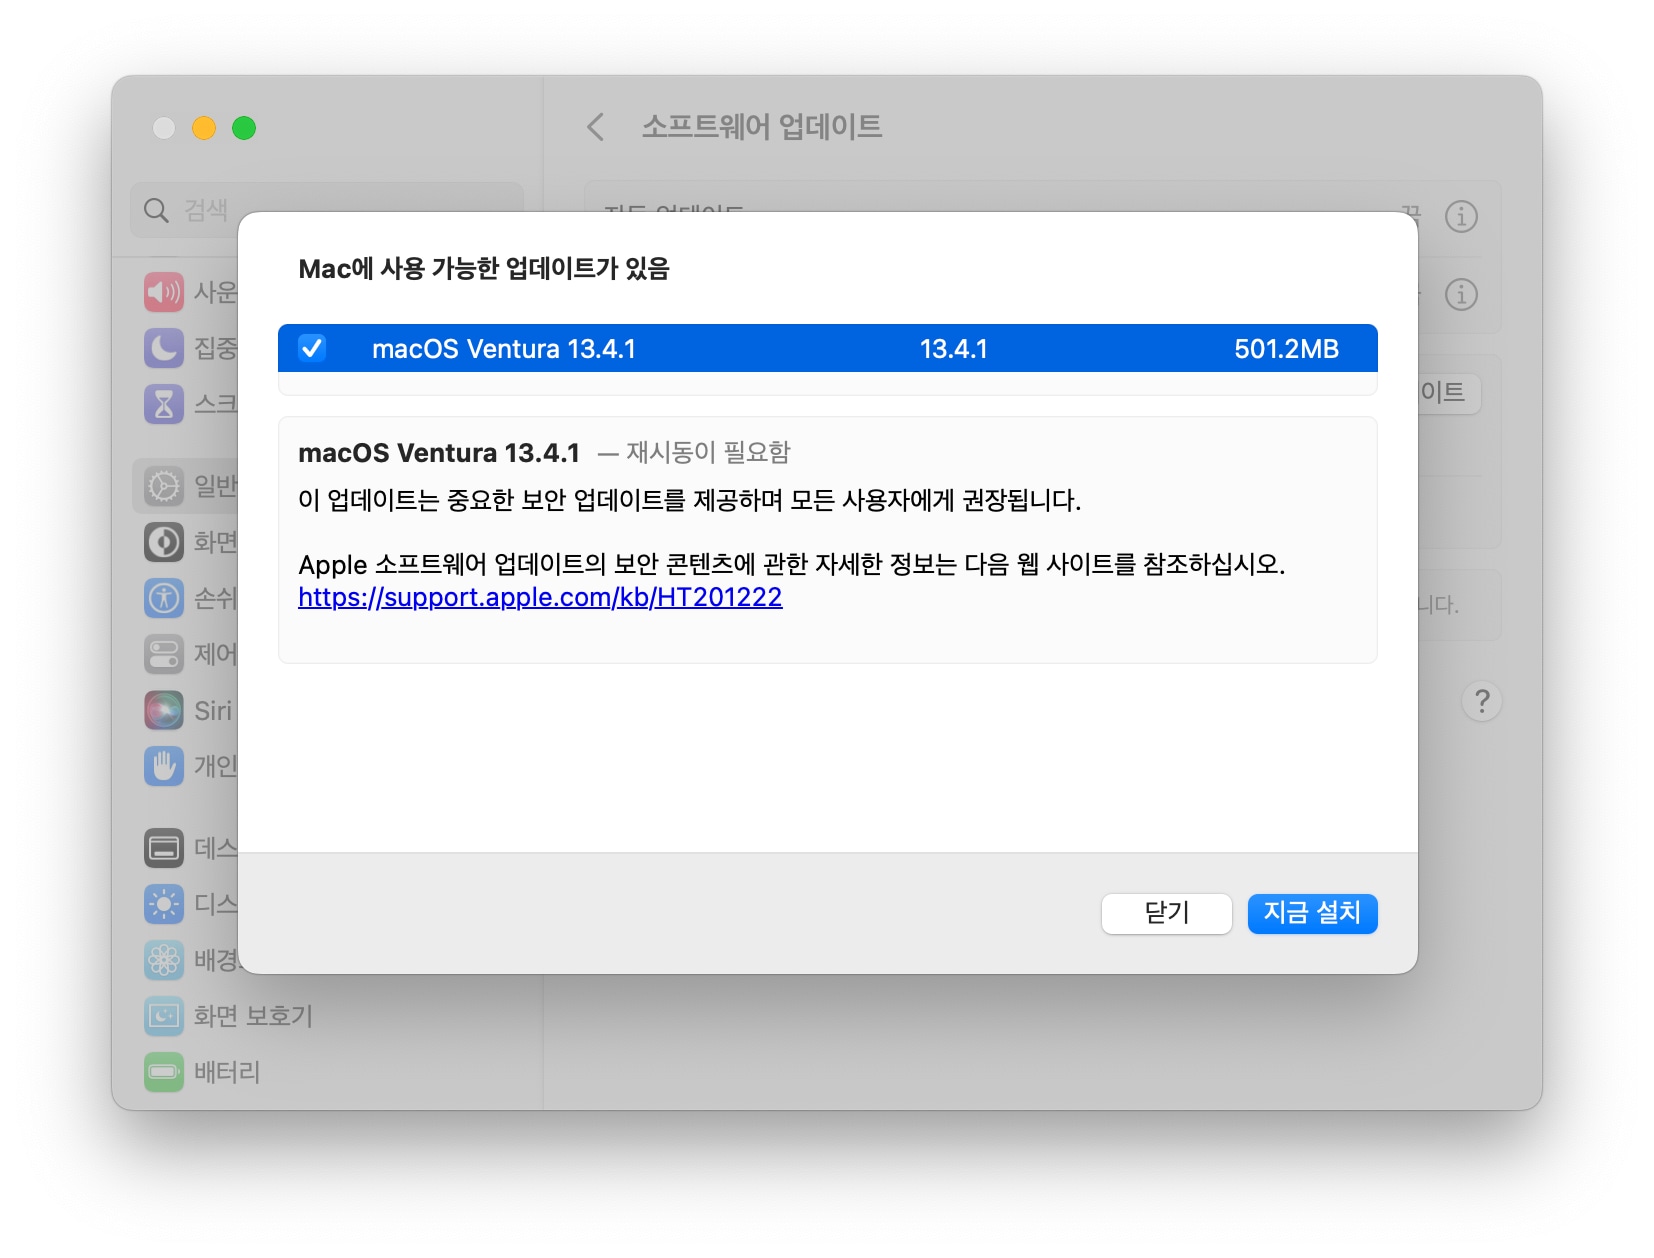 맥OS 벤투라 13.4.1 업데이트 용량 및 릴리즈 노트